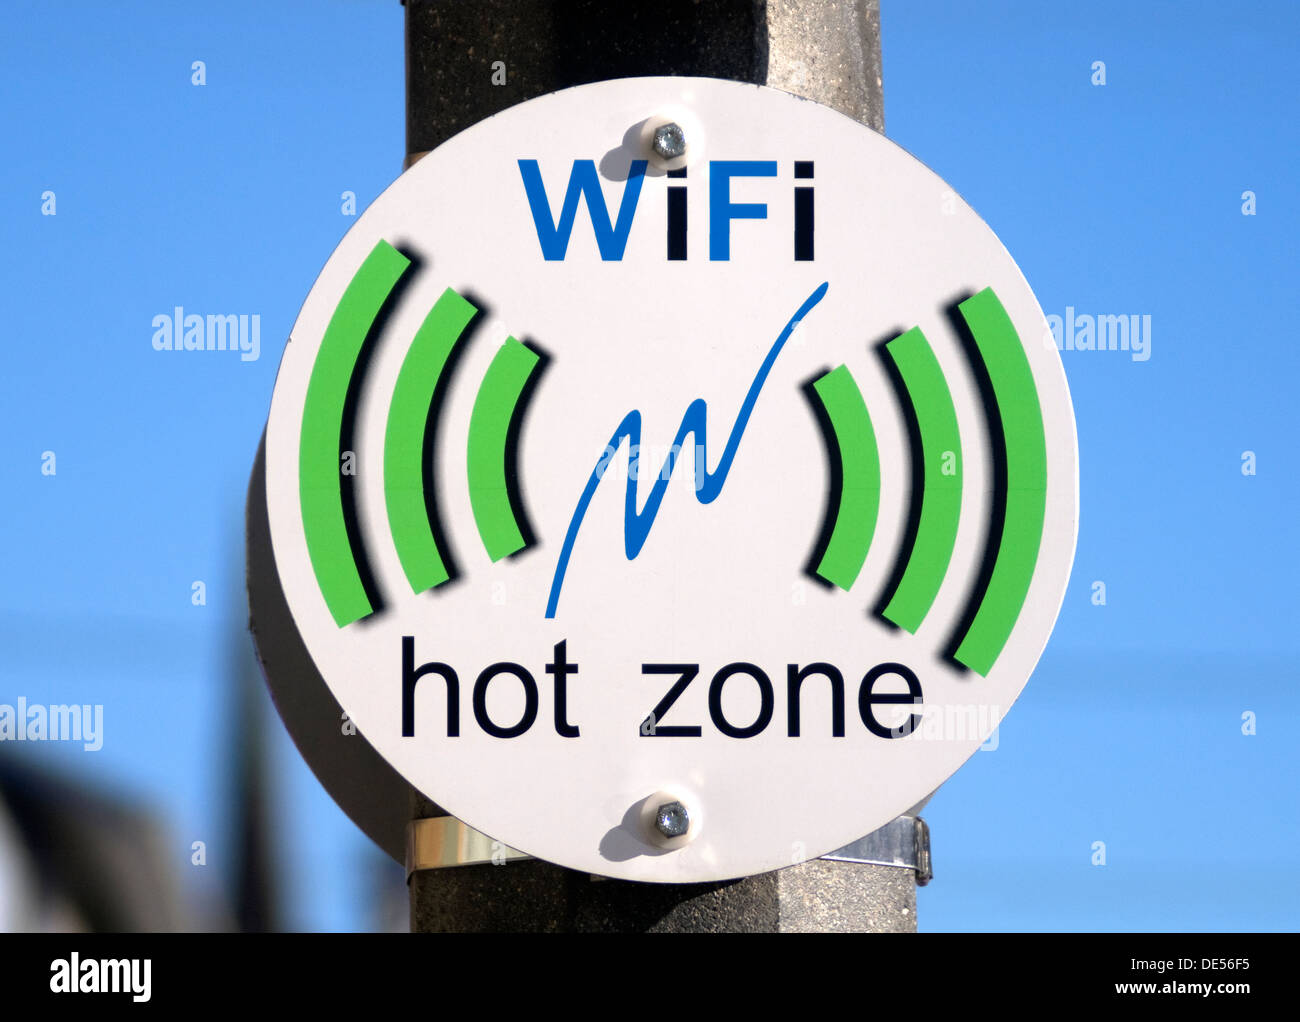 Signo zona caliente WiFi de conexión a Internet de acceso público Foto de stock